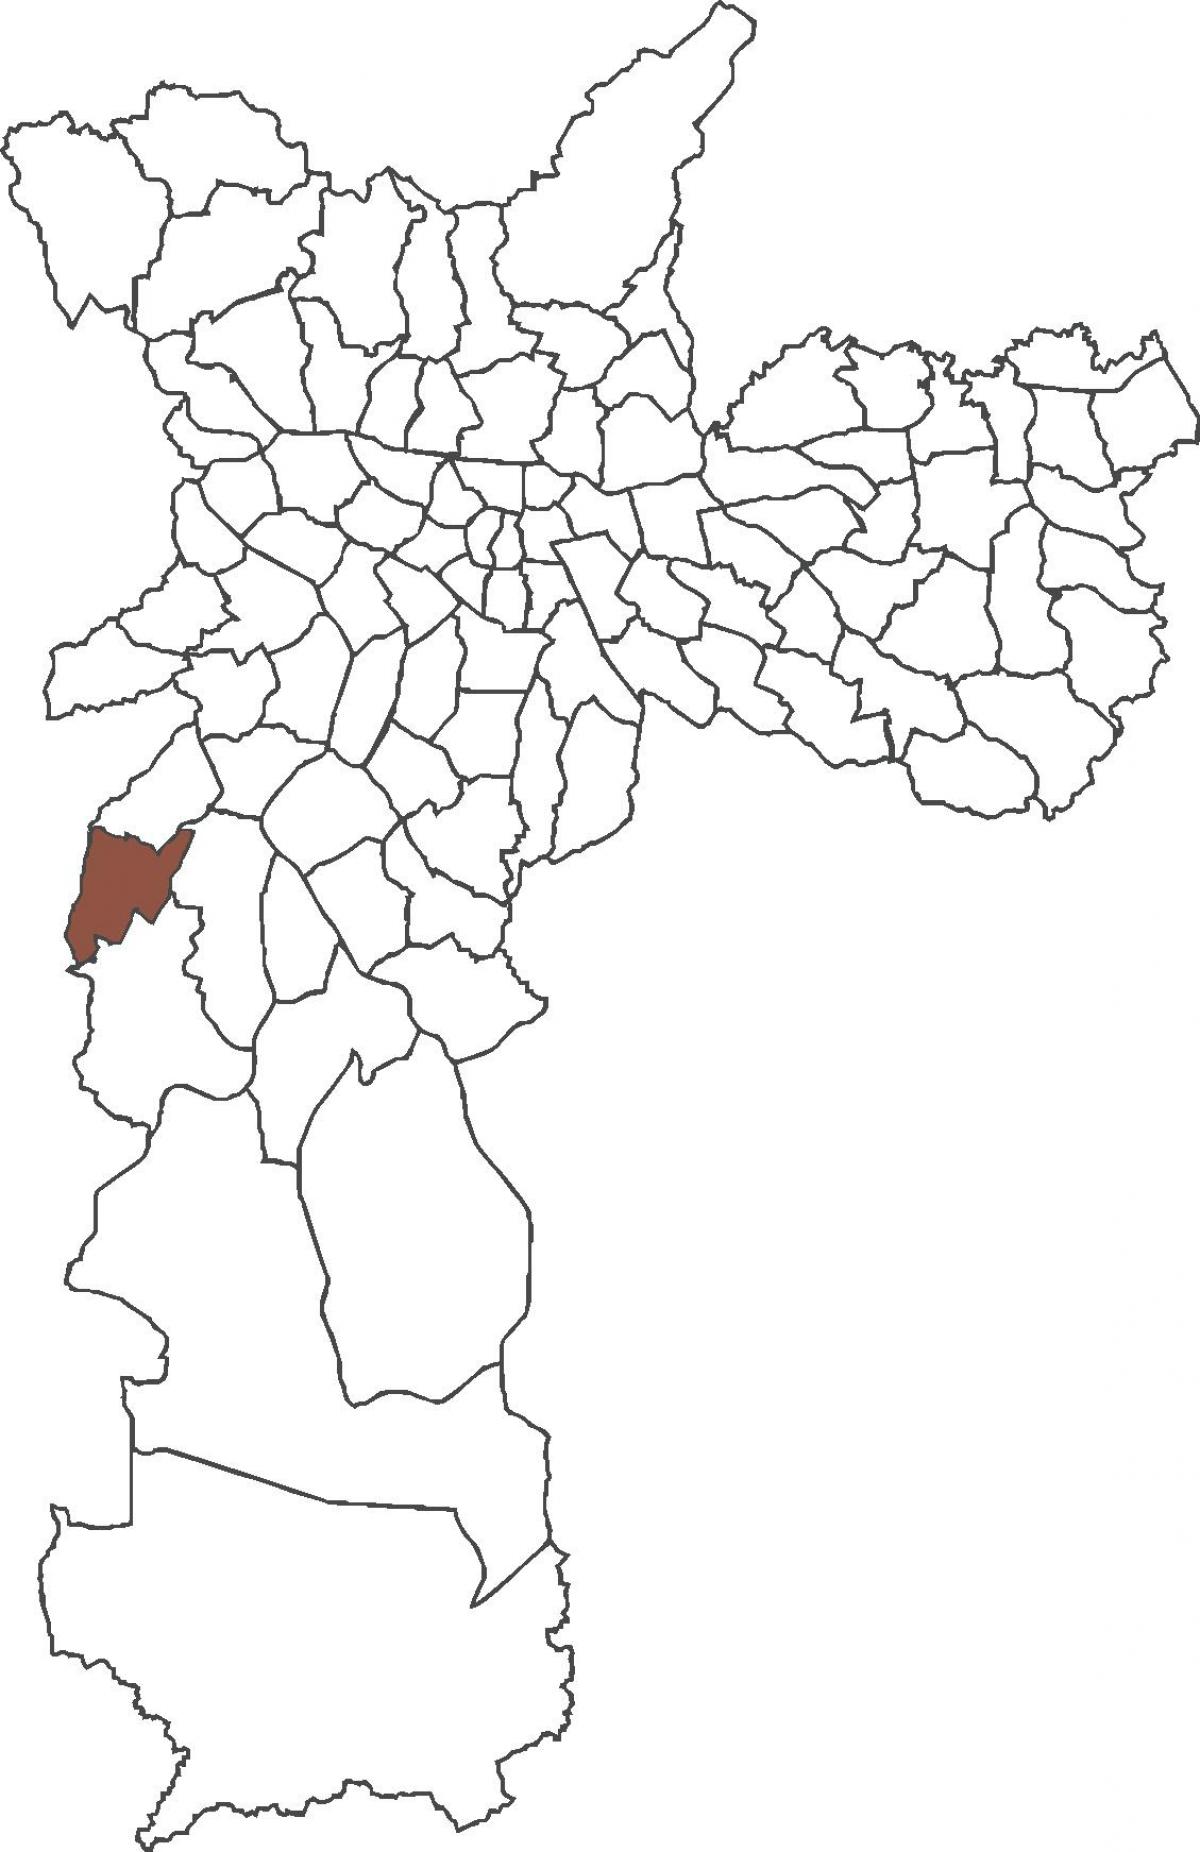 નકશો Capão Redondo જિલ્લા